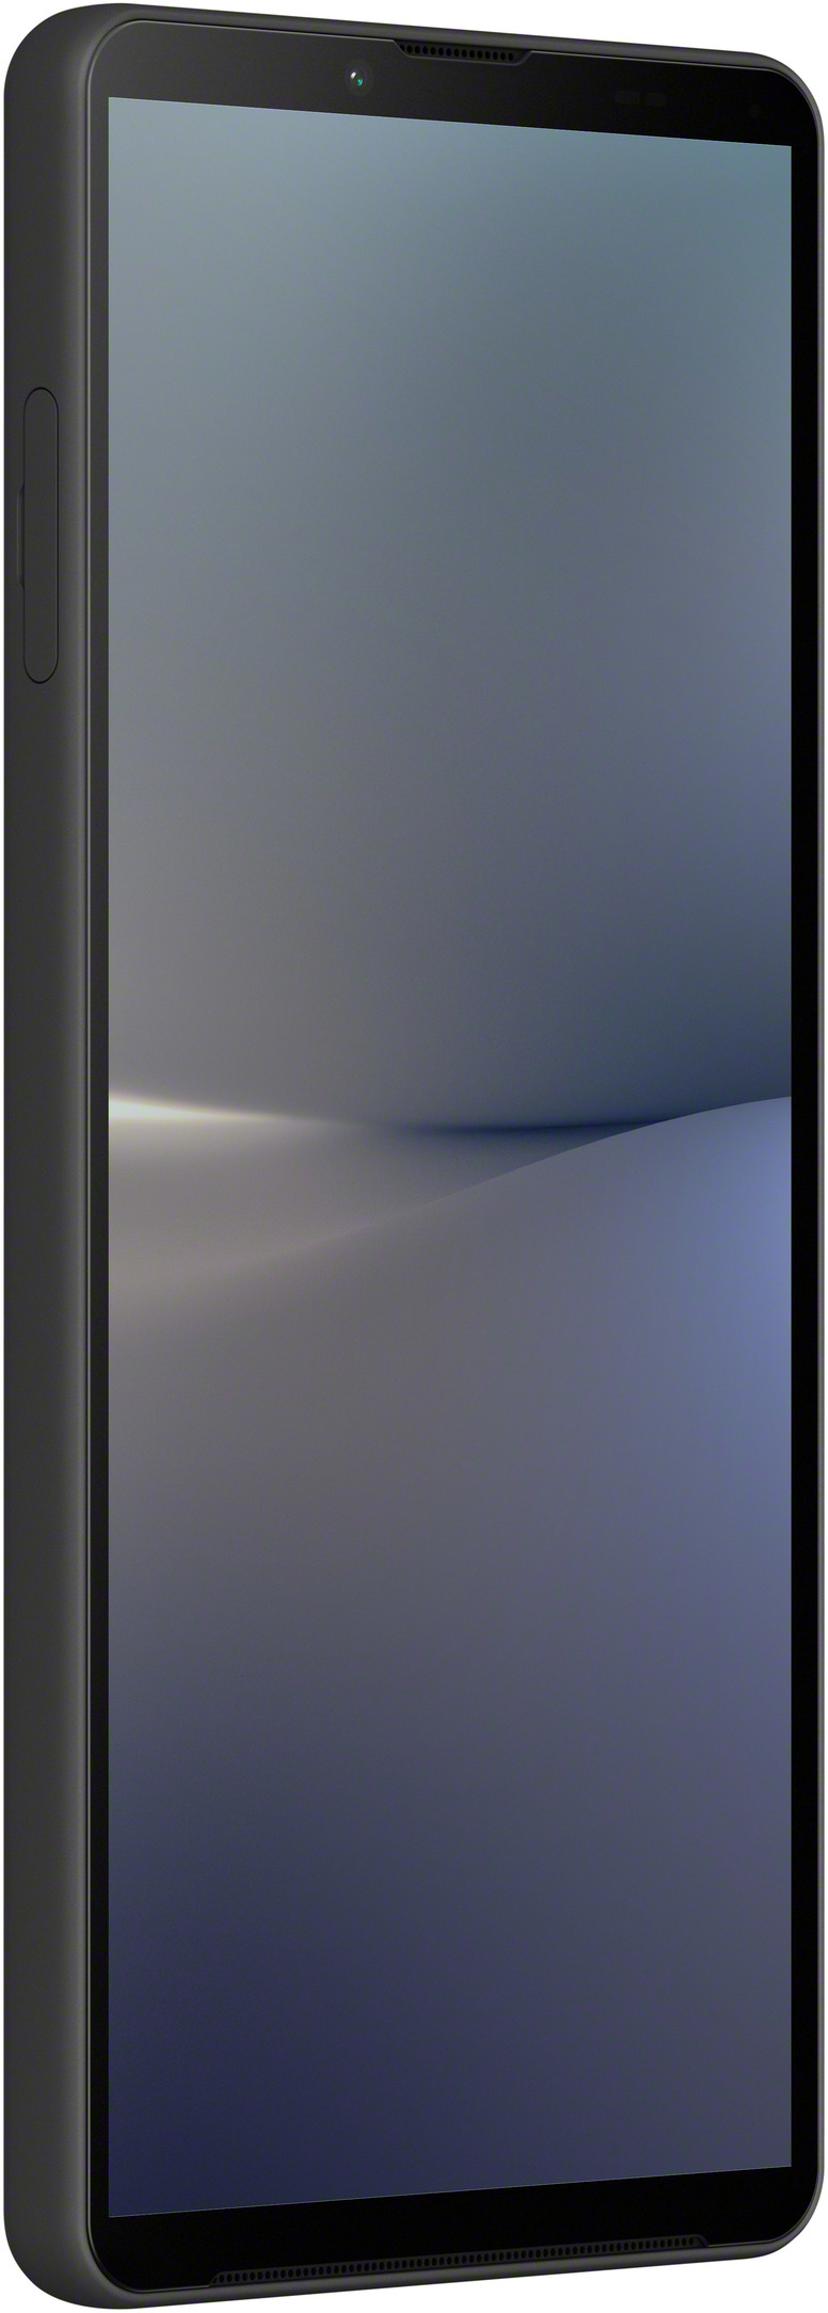 Sony XPERIA 10 V - (Löytötuote luokka 2)